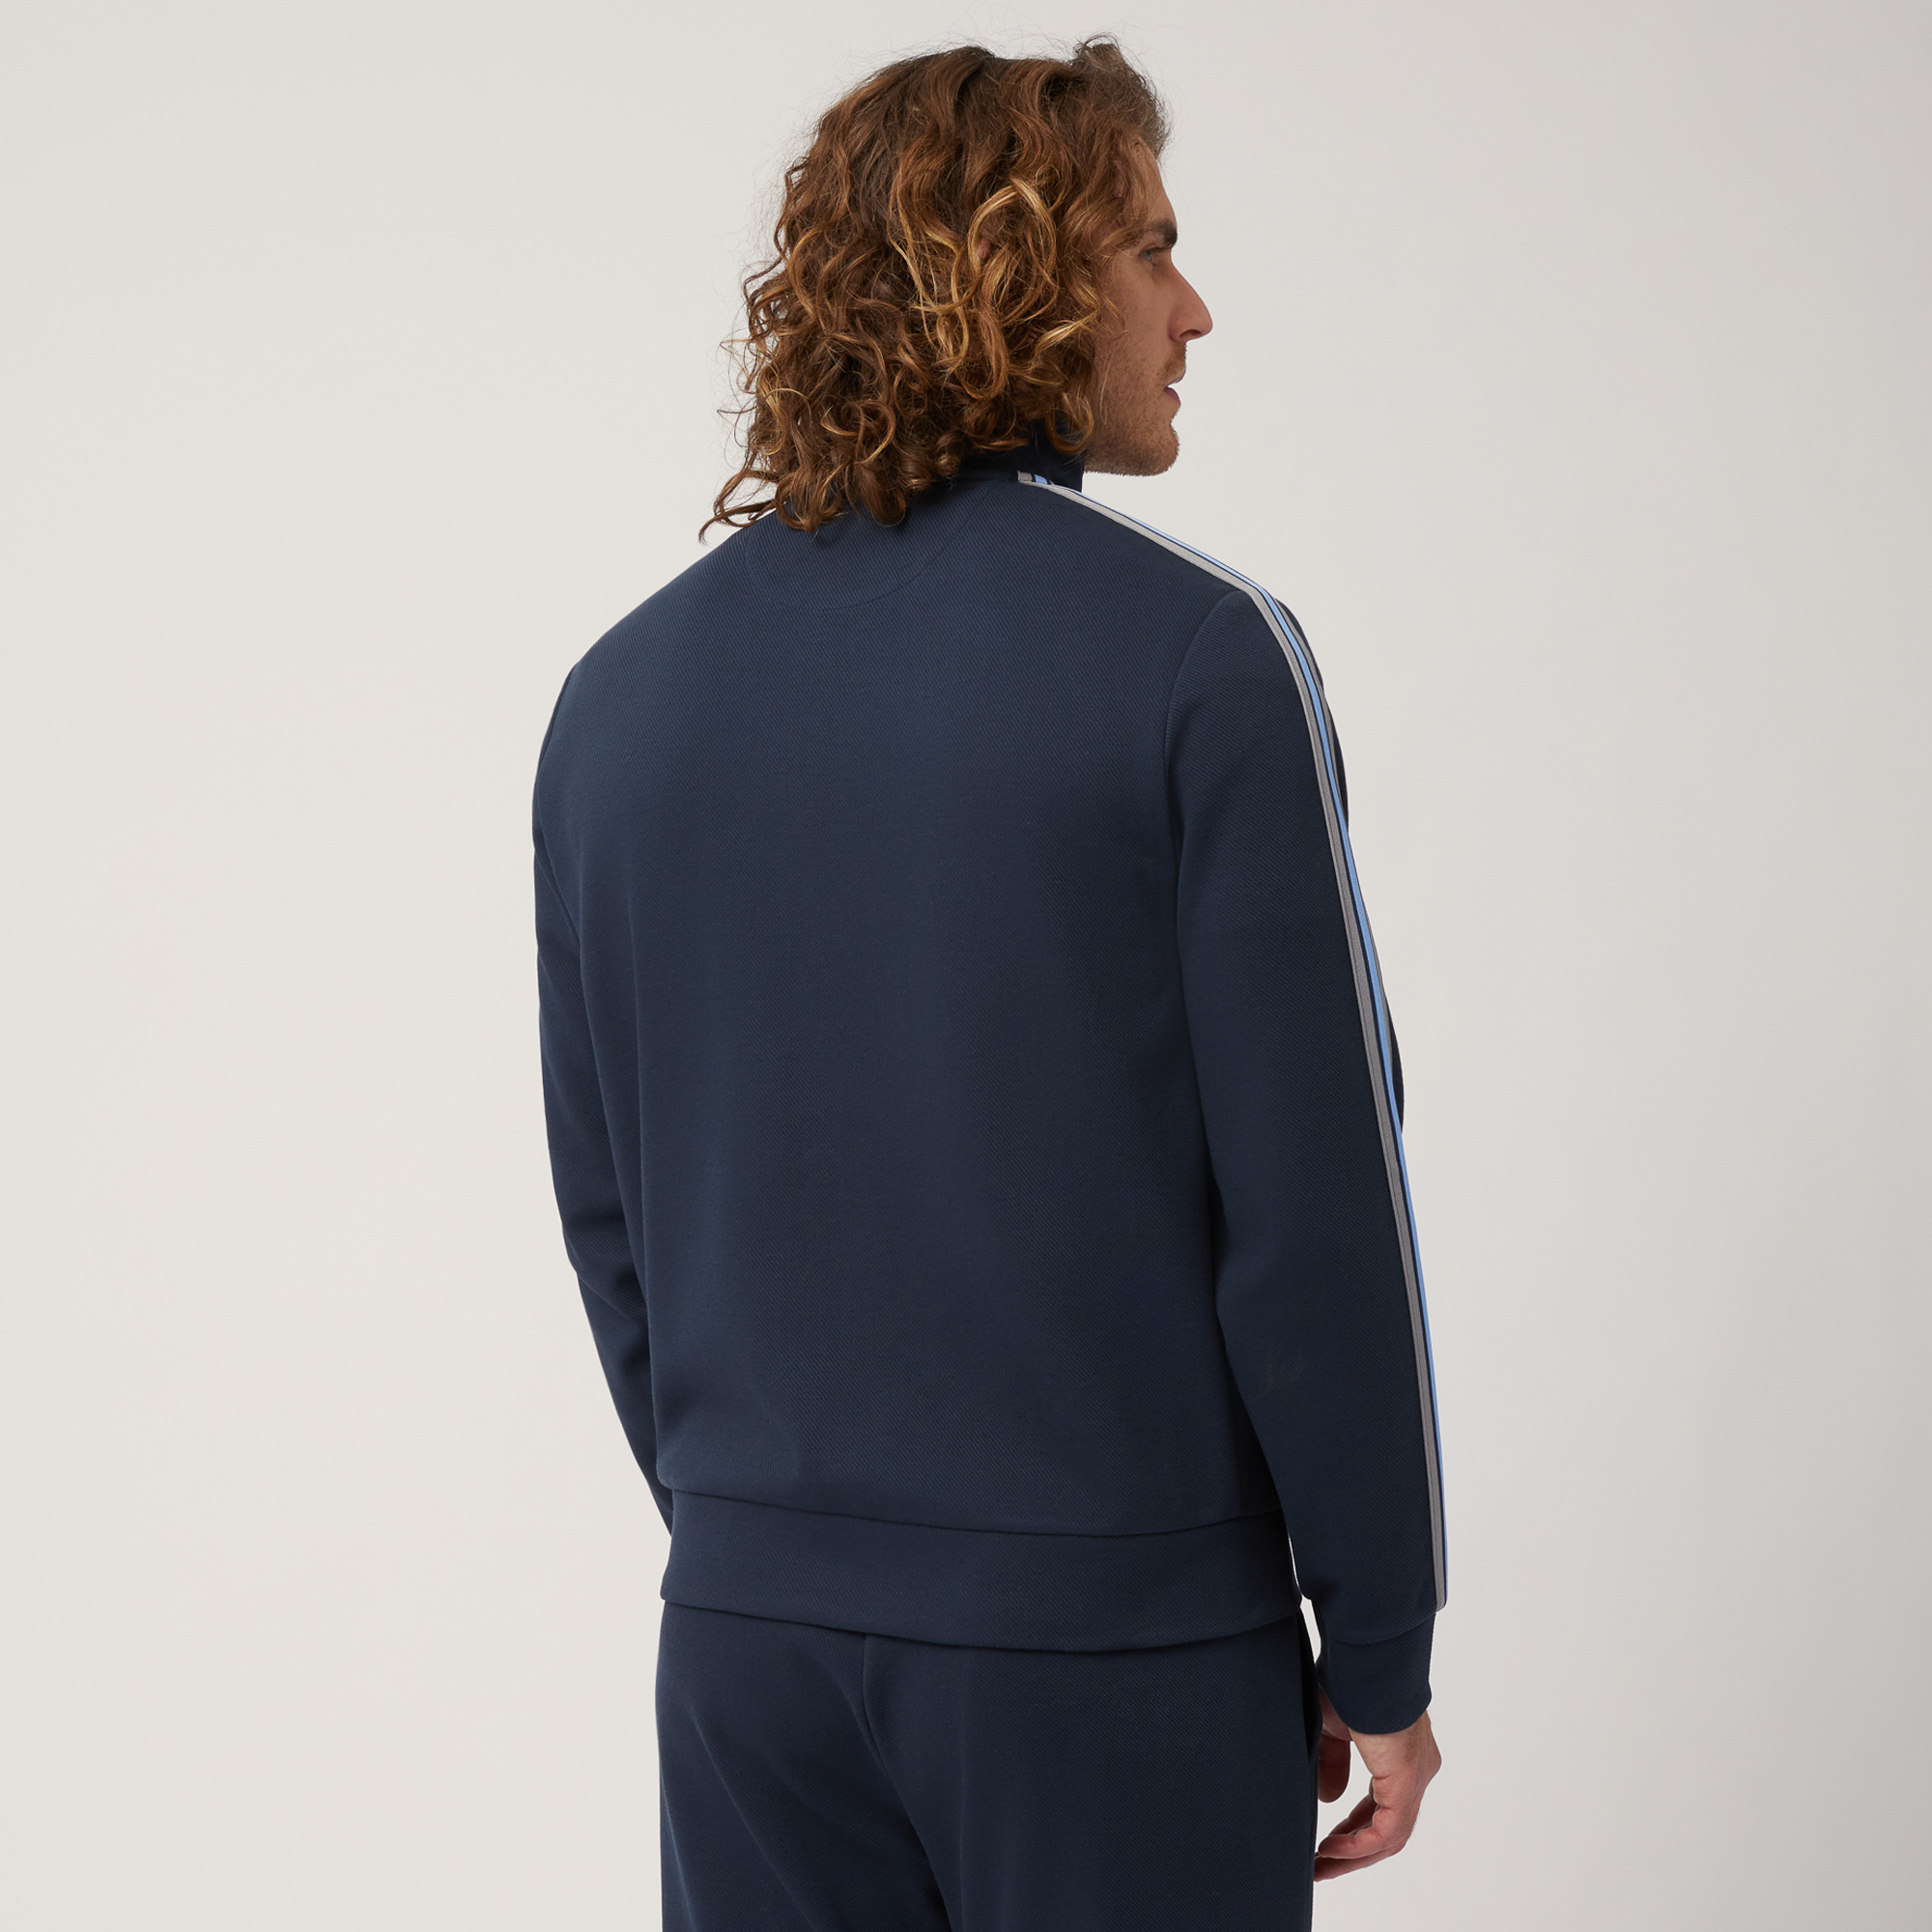 Sweatshirt aus Stretch-Baumwolle mit durchgehendem Reißverschluss und gestreiftem Band, Blau, large image number 1